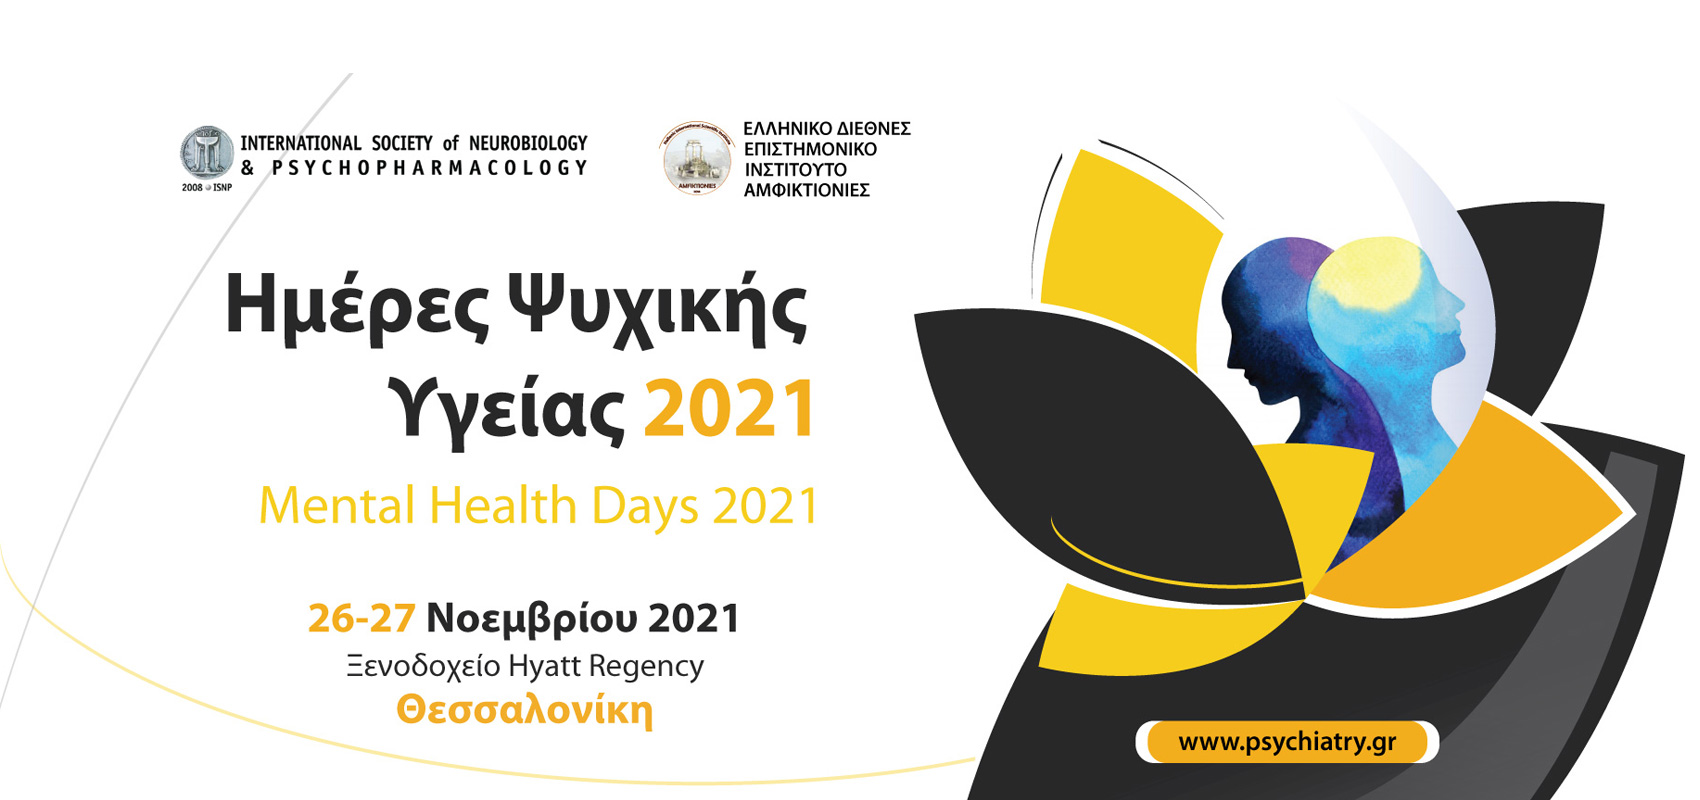 Ημέρες Ψυχικής Υγείας 2021, Mental Health Days 2021